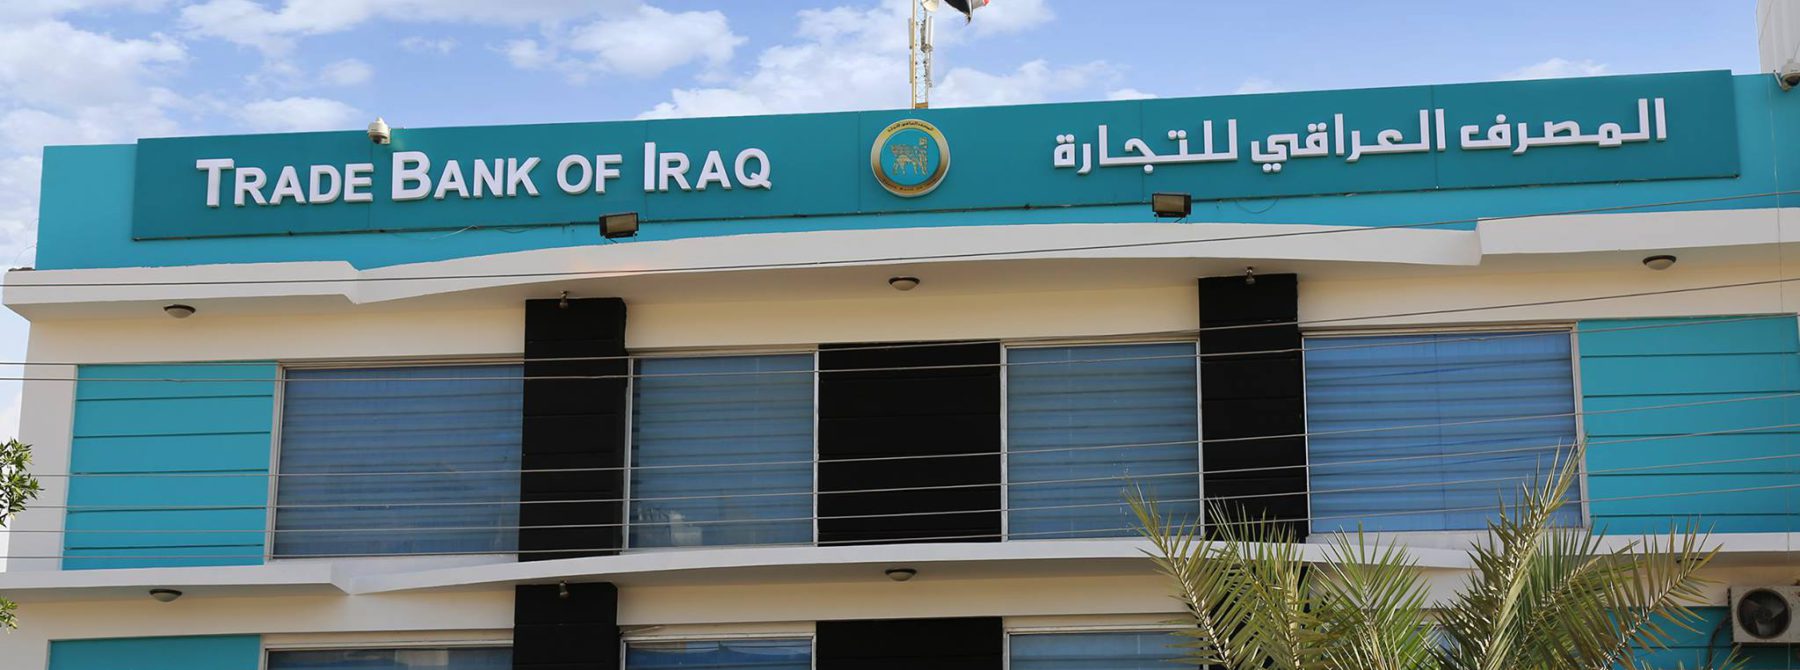 رئيس حزب يطالب بالكشف عن فساد المصرف العراقي للتجارة